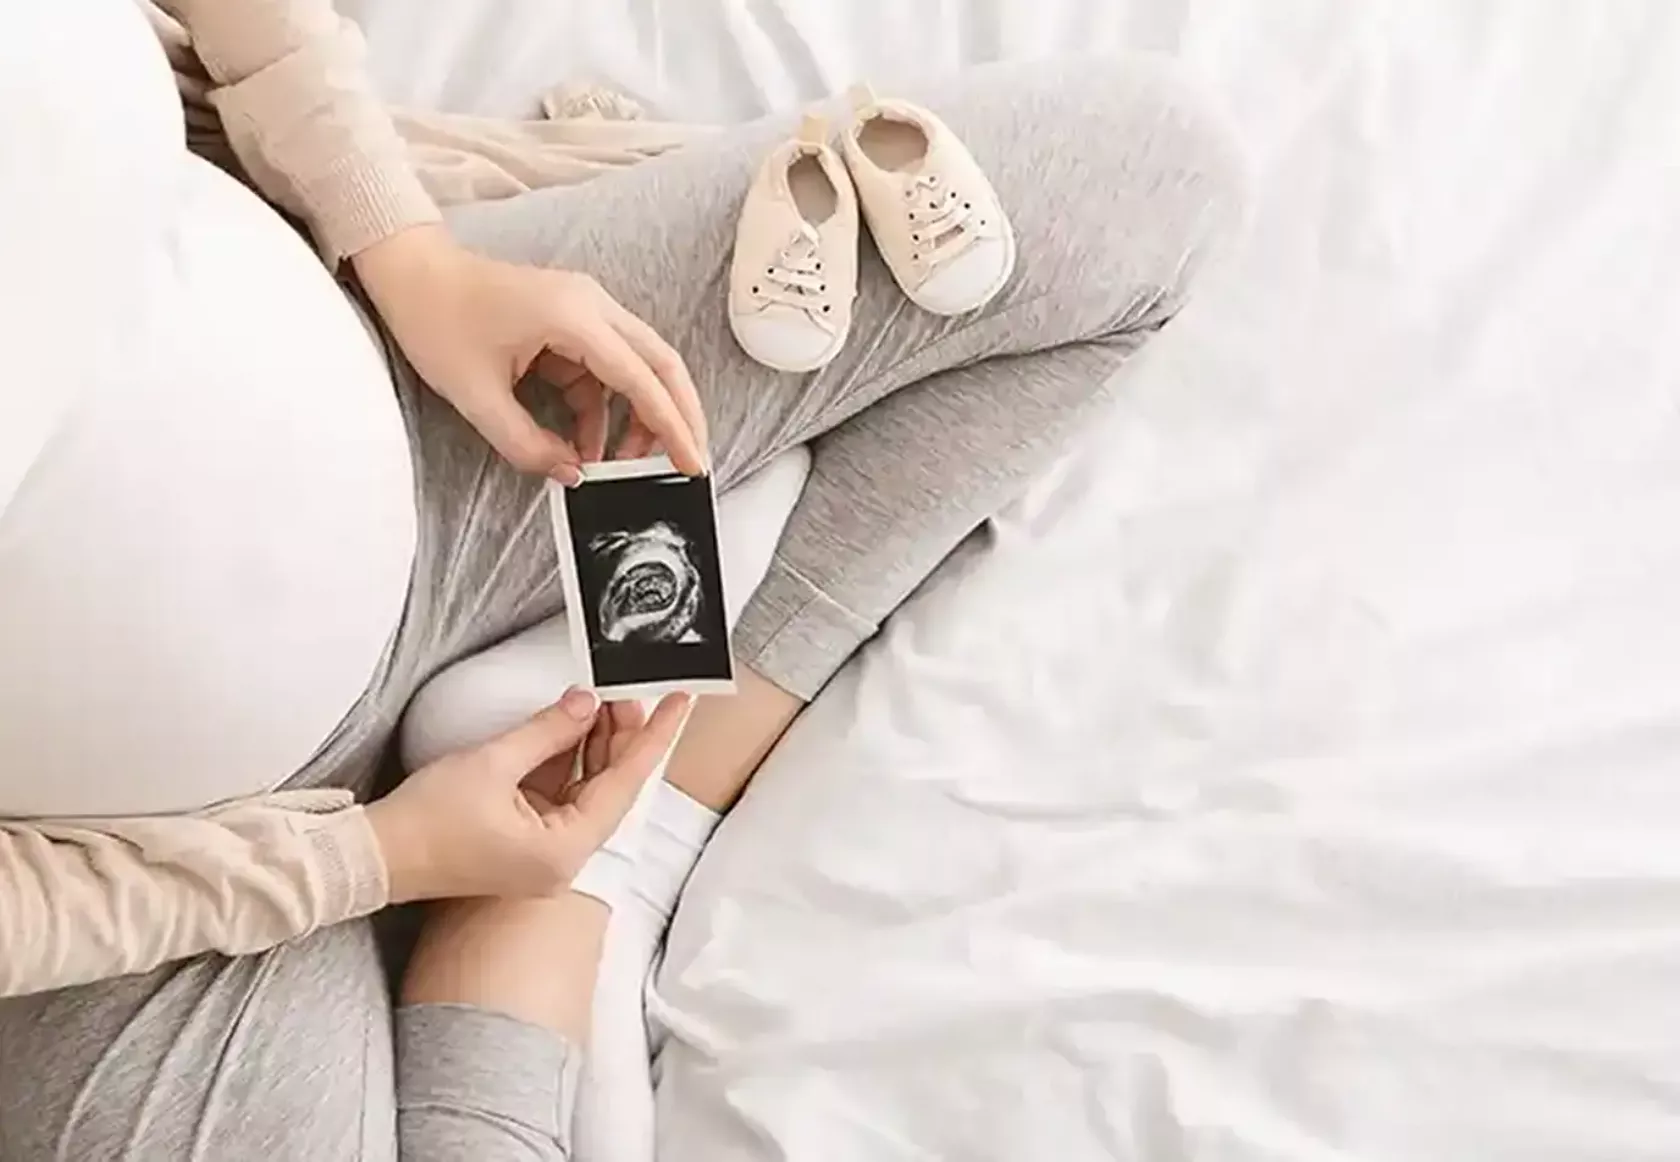 Blick von oben auf eine hochschwangere Frau, die ein Ultraschall-Bild in den Händen hält und betrachtet.